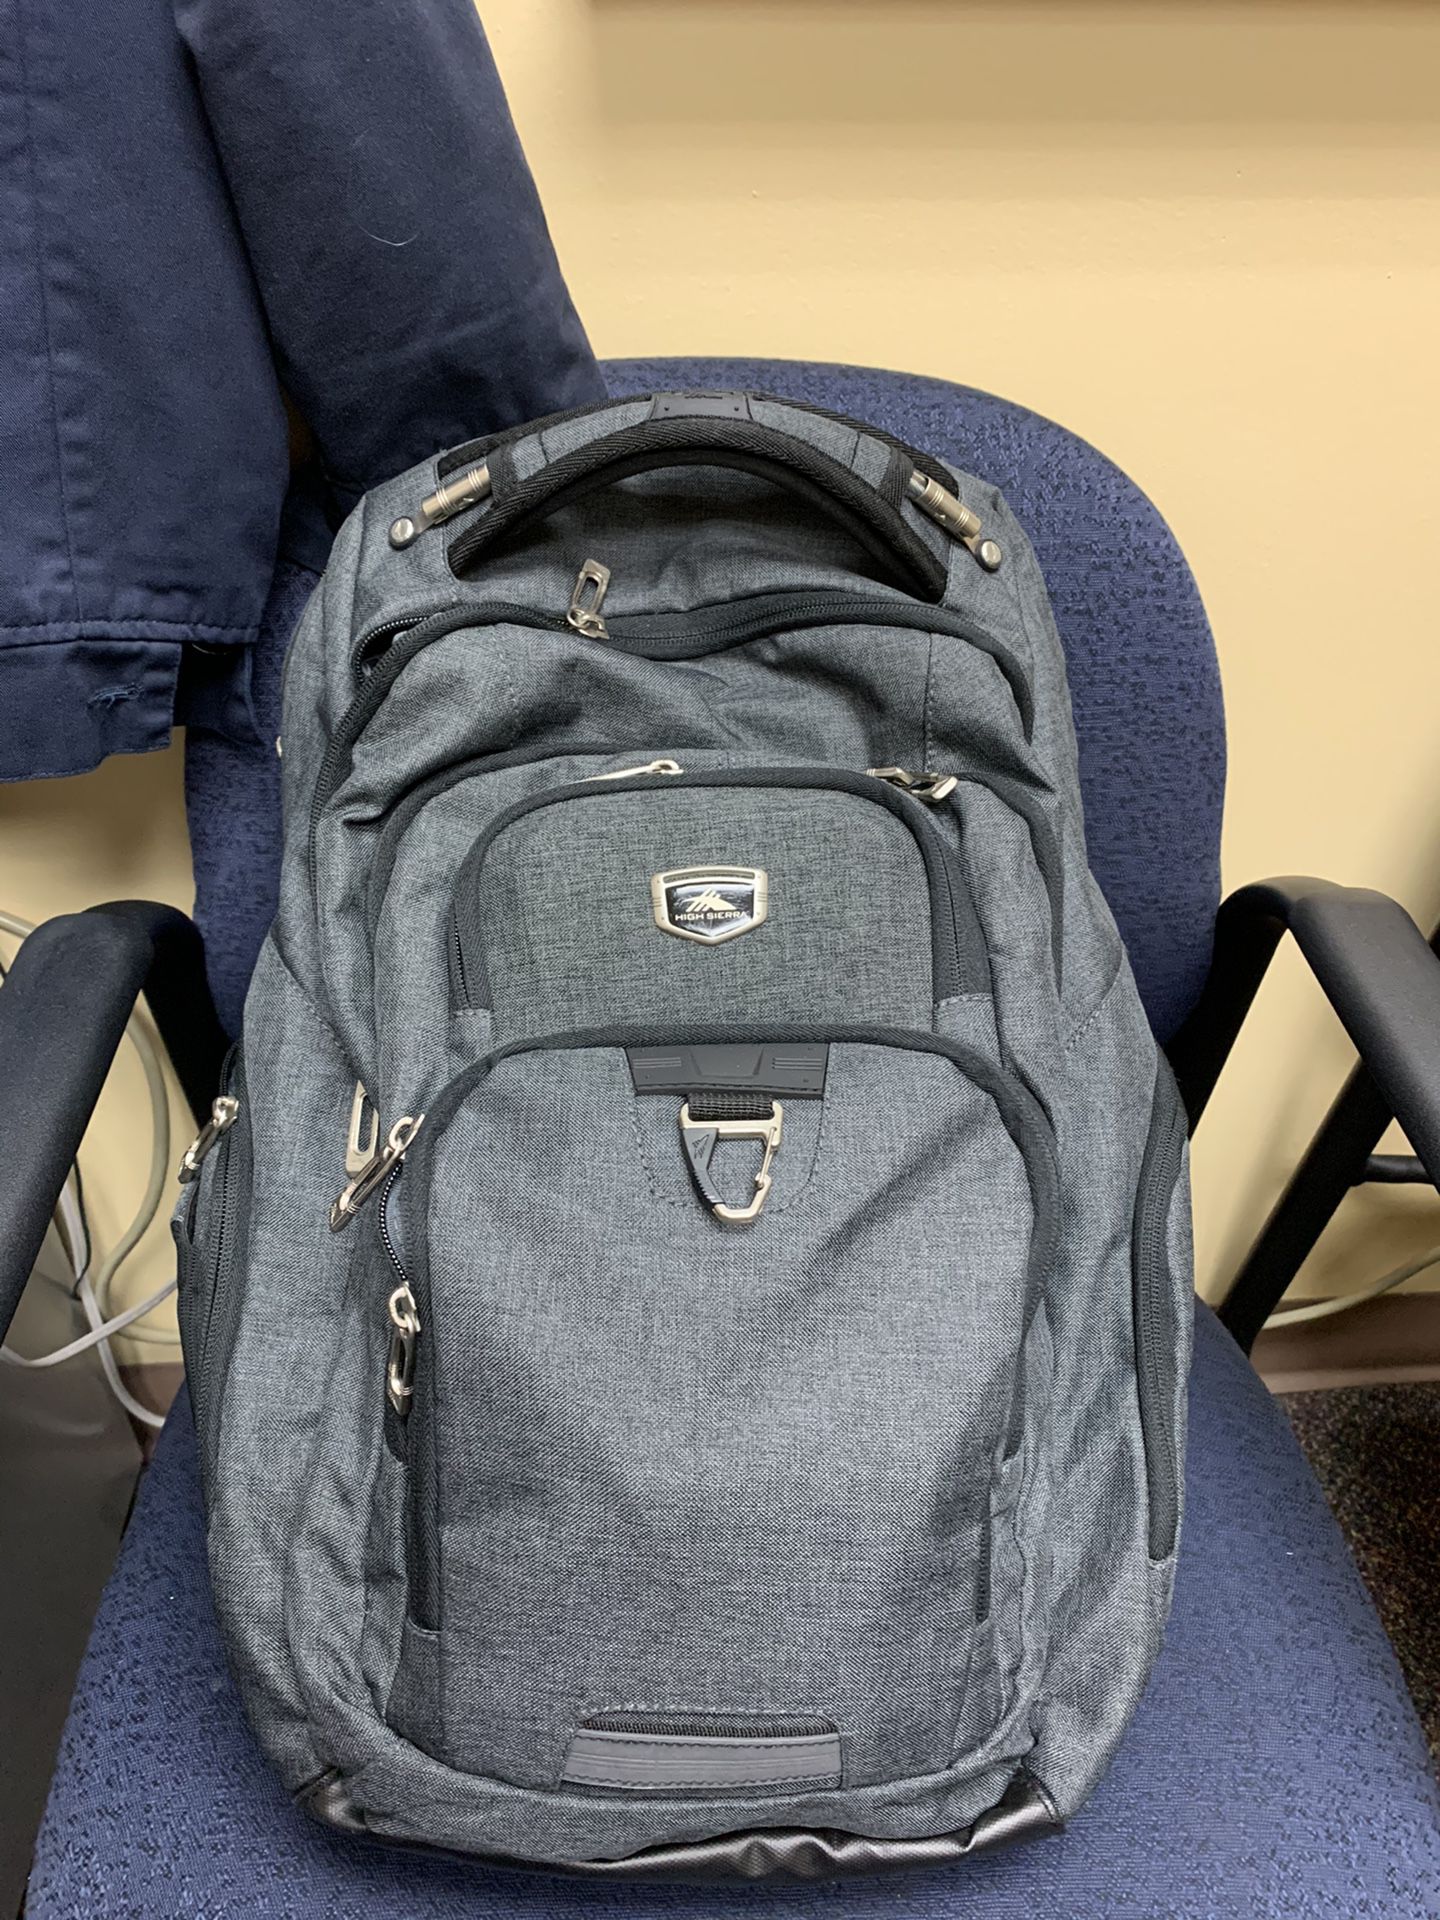 High Sierra Laptop Backpack